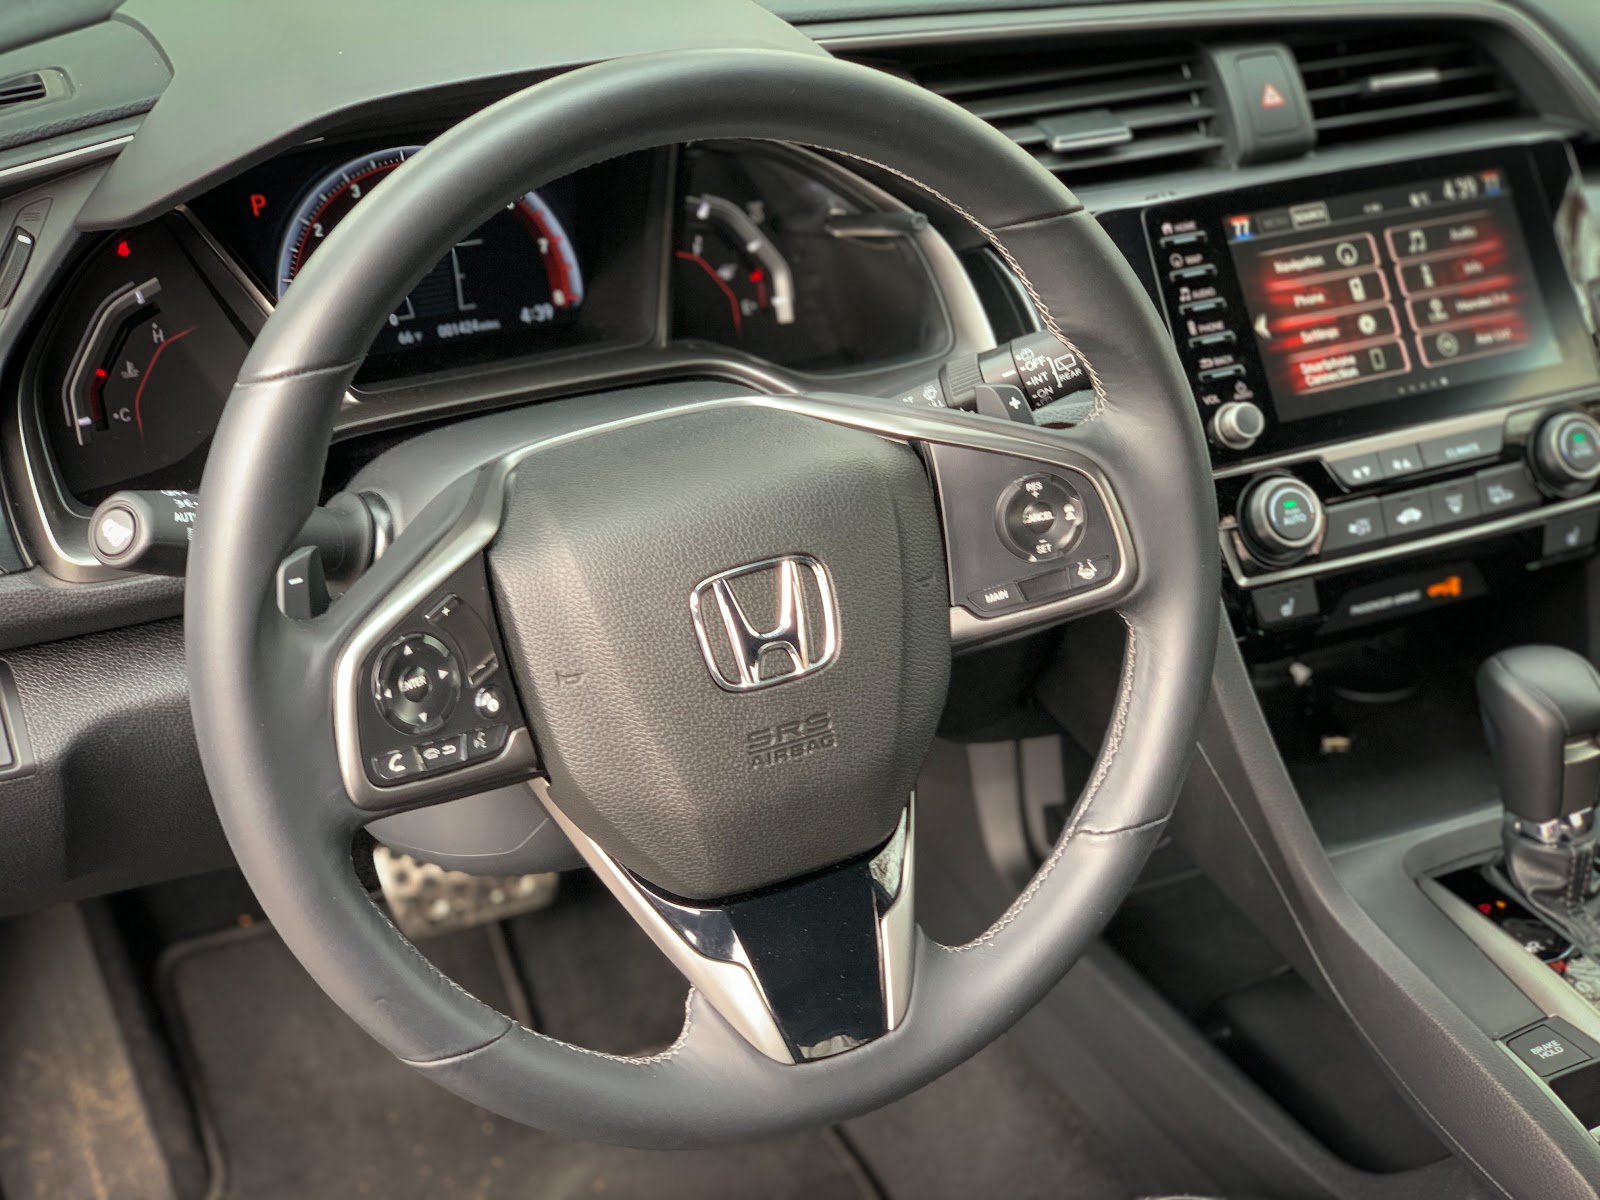 Honda Civic Hatchback steering wheel